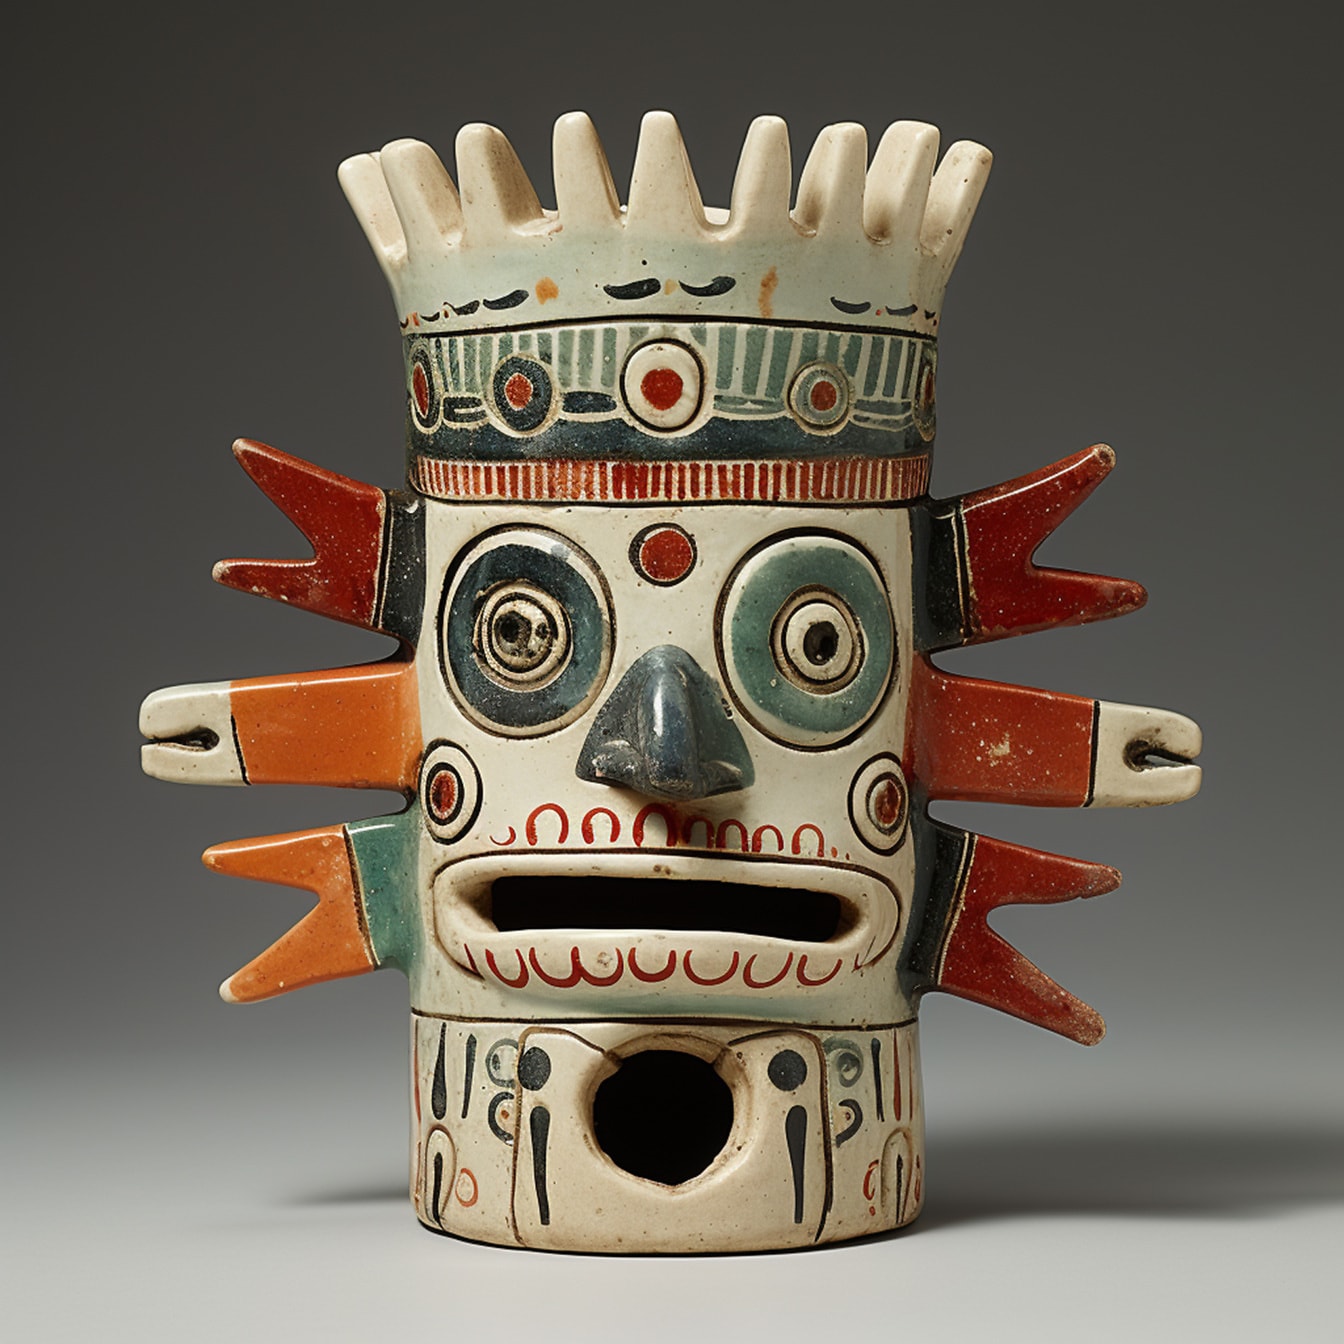 Traditionelle handgefertigte aztekische Maya-mexikanische Porzellanfigur